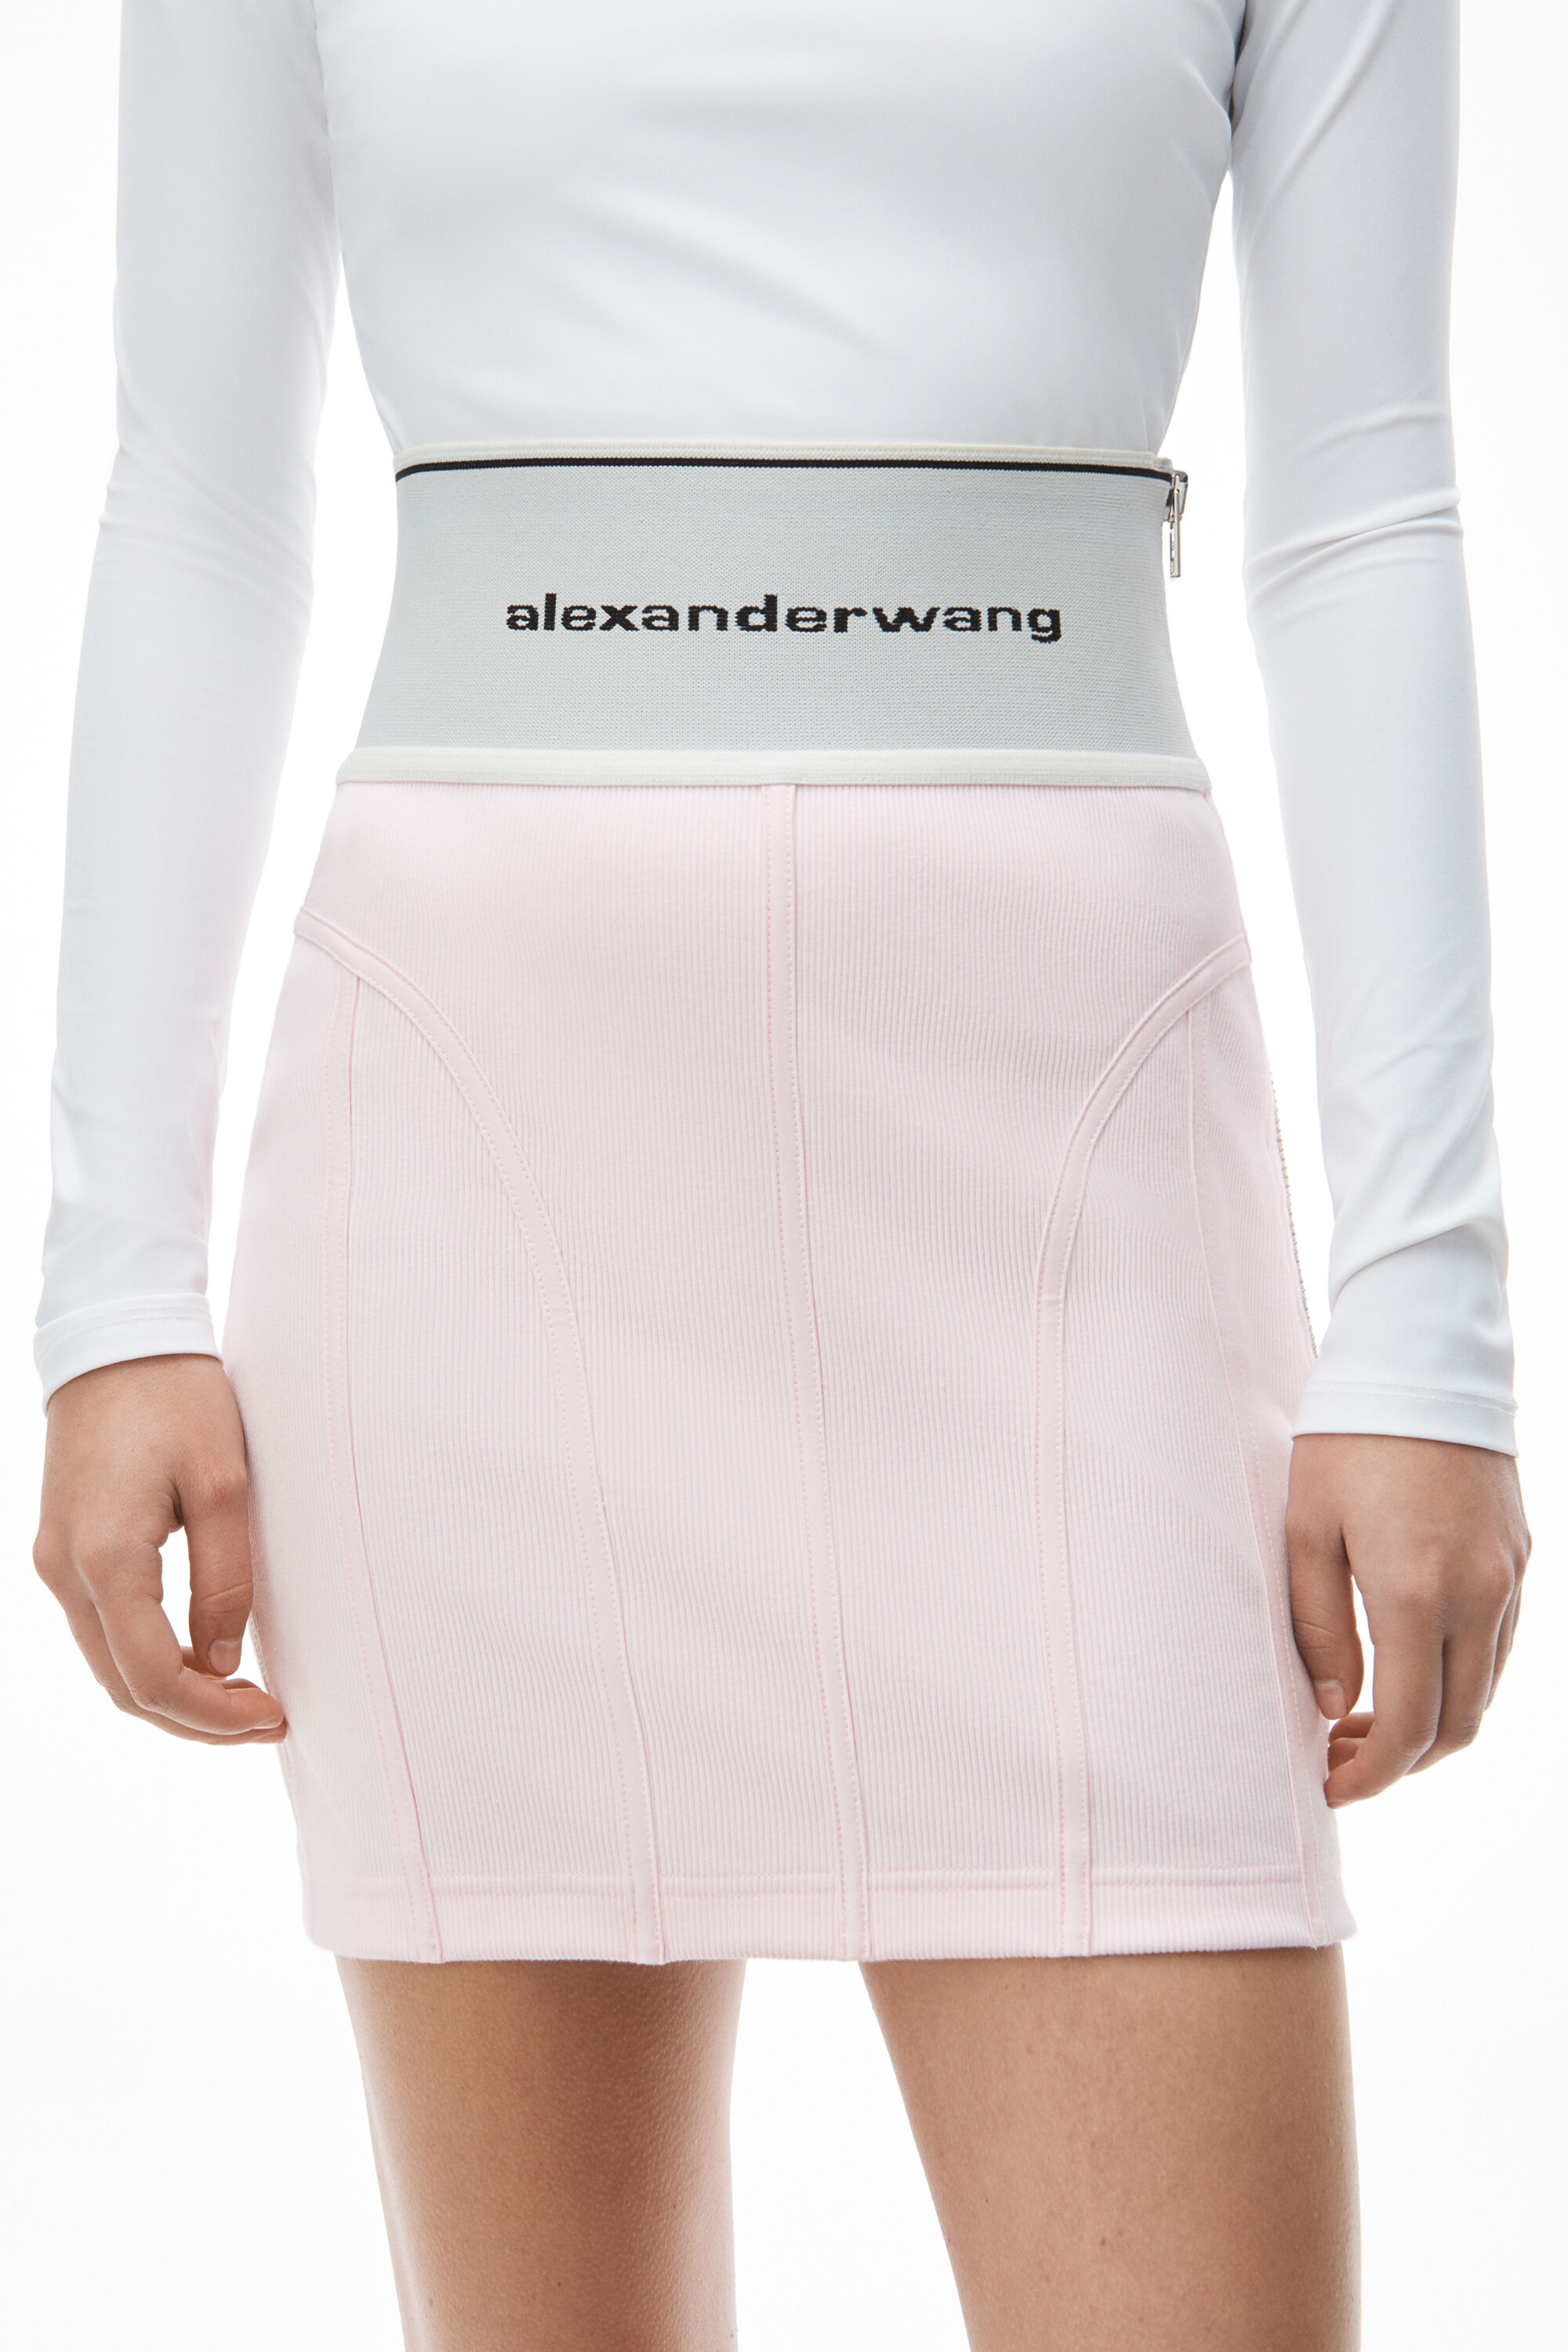 ブラック系,S一番の贈り物 Alexander wang ロゴミニスカート ミニスカート スカートブラック系S￥31,872-eur-artec.fr